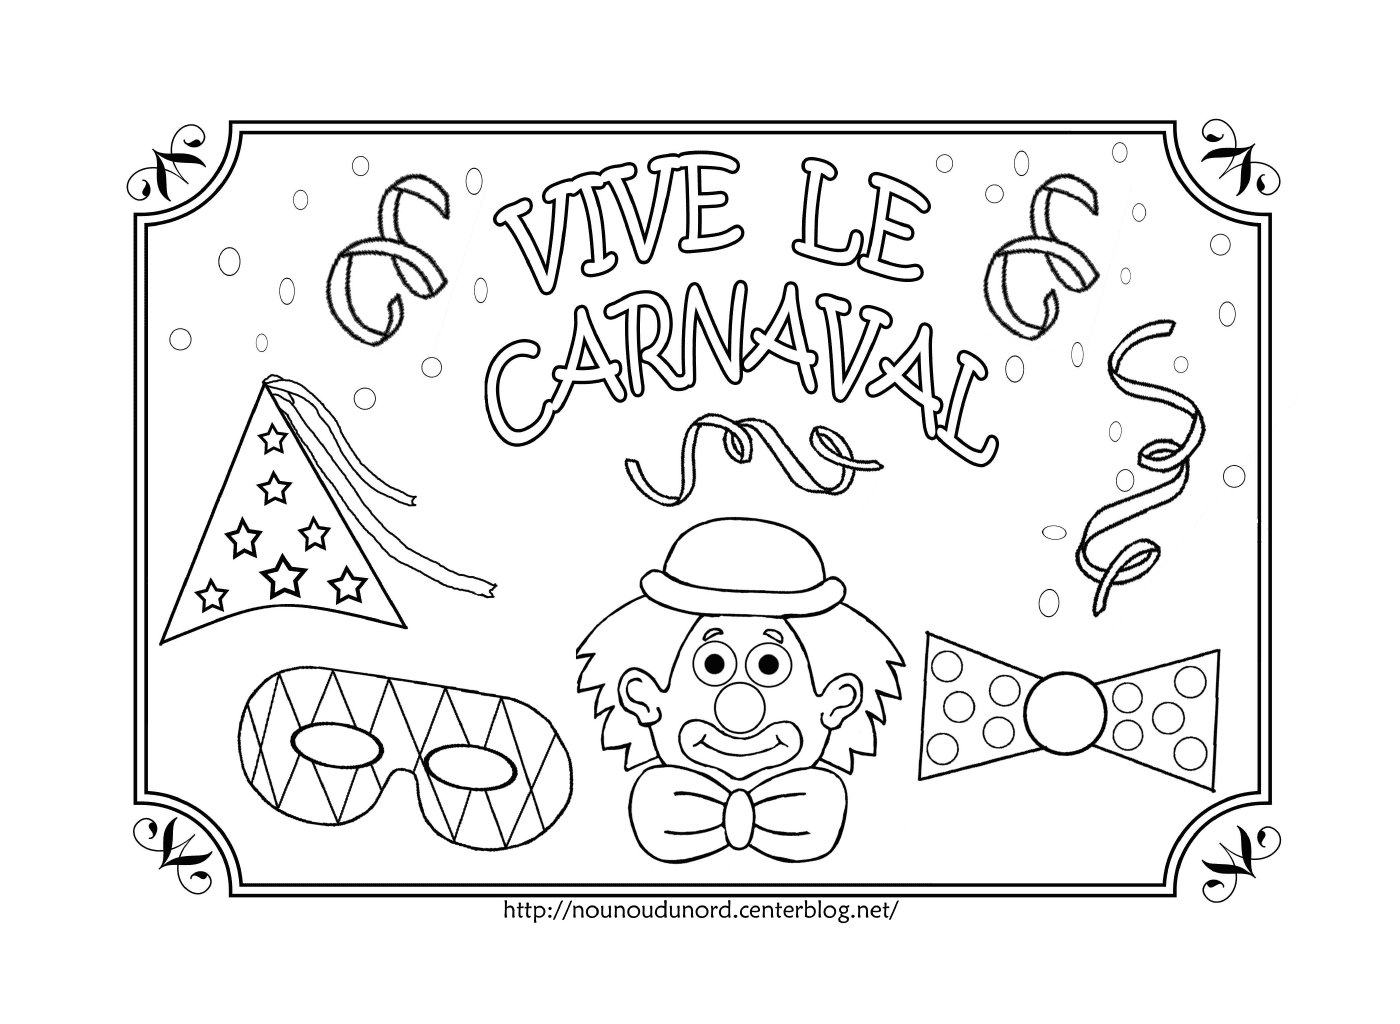   Vive le carnaval, coloriage de la fête du carnaval 